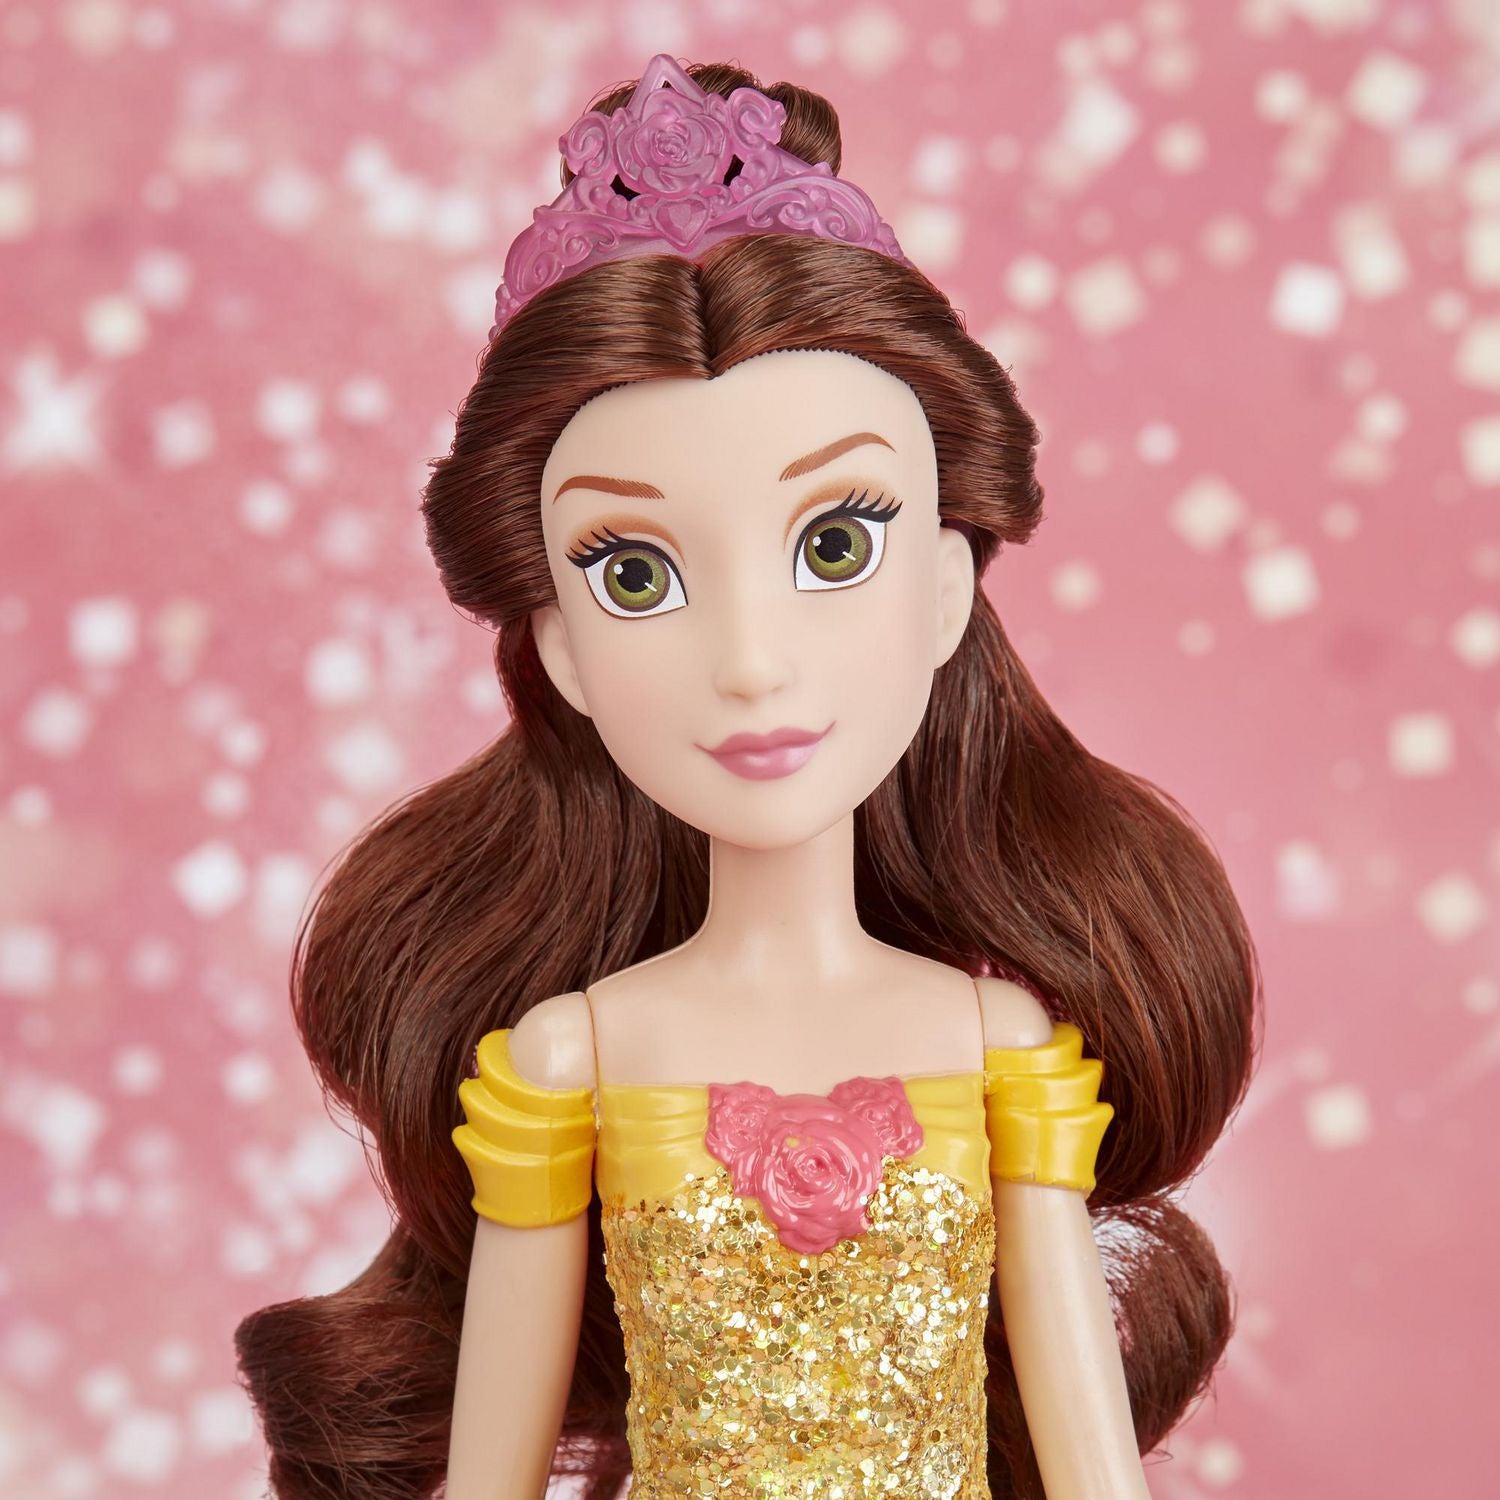 Disney Princess - Royal Shimmer Belle